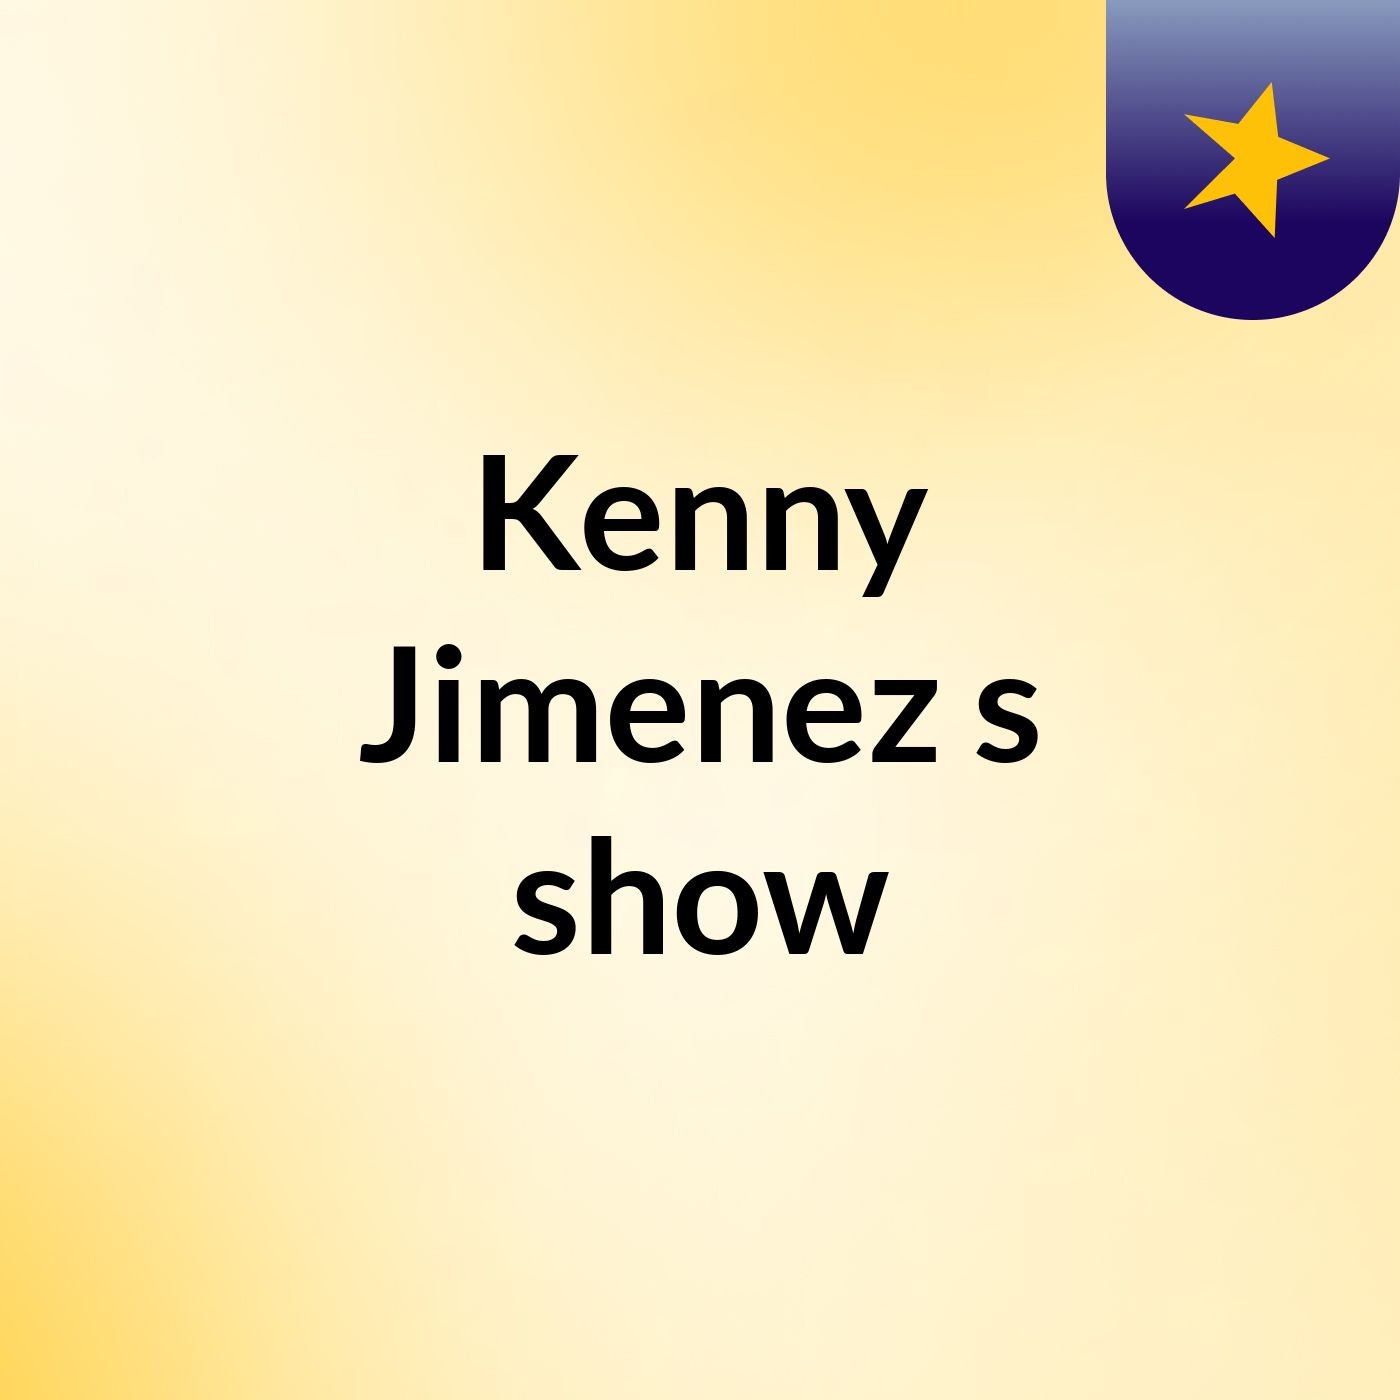 Kenny Jimenez's show